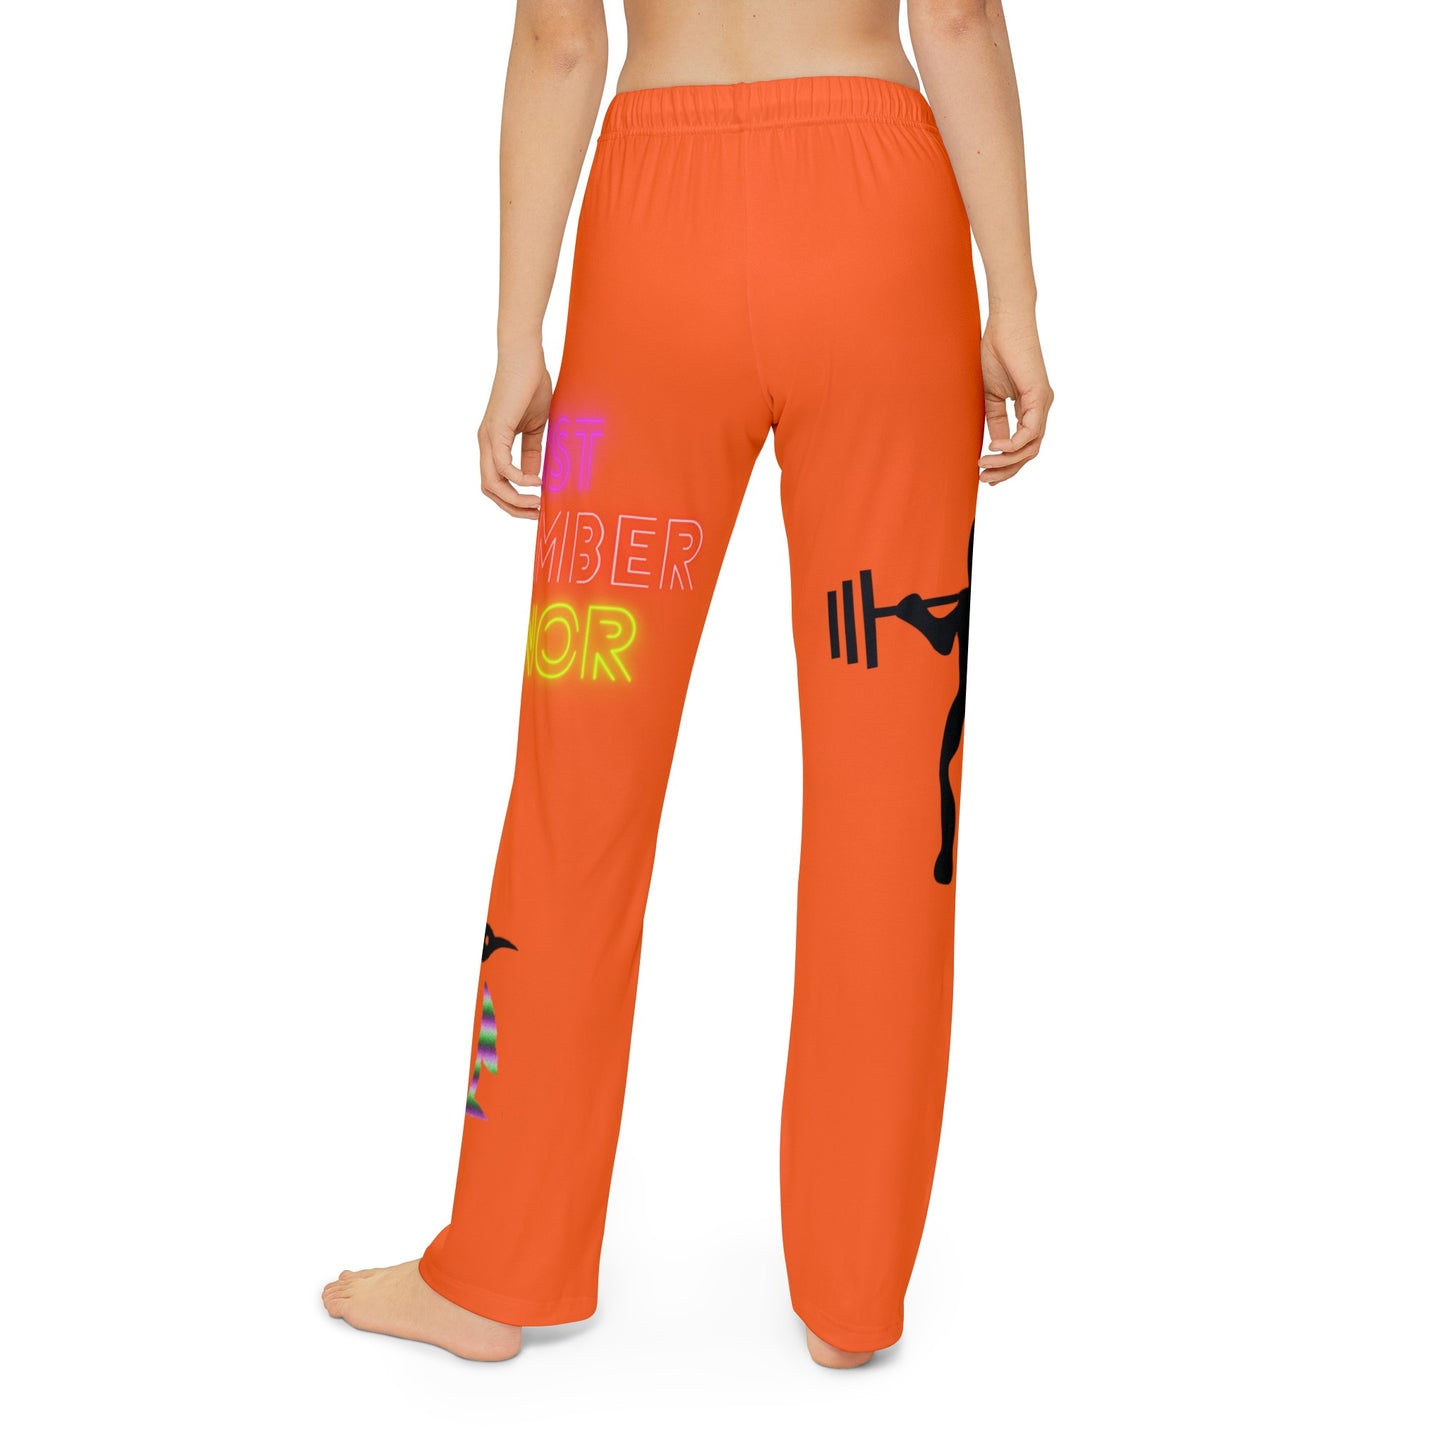 Kids Pajama Pants: Weightlifting Orange